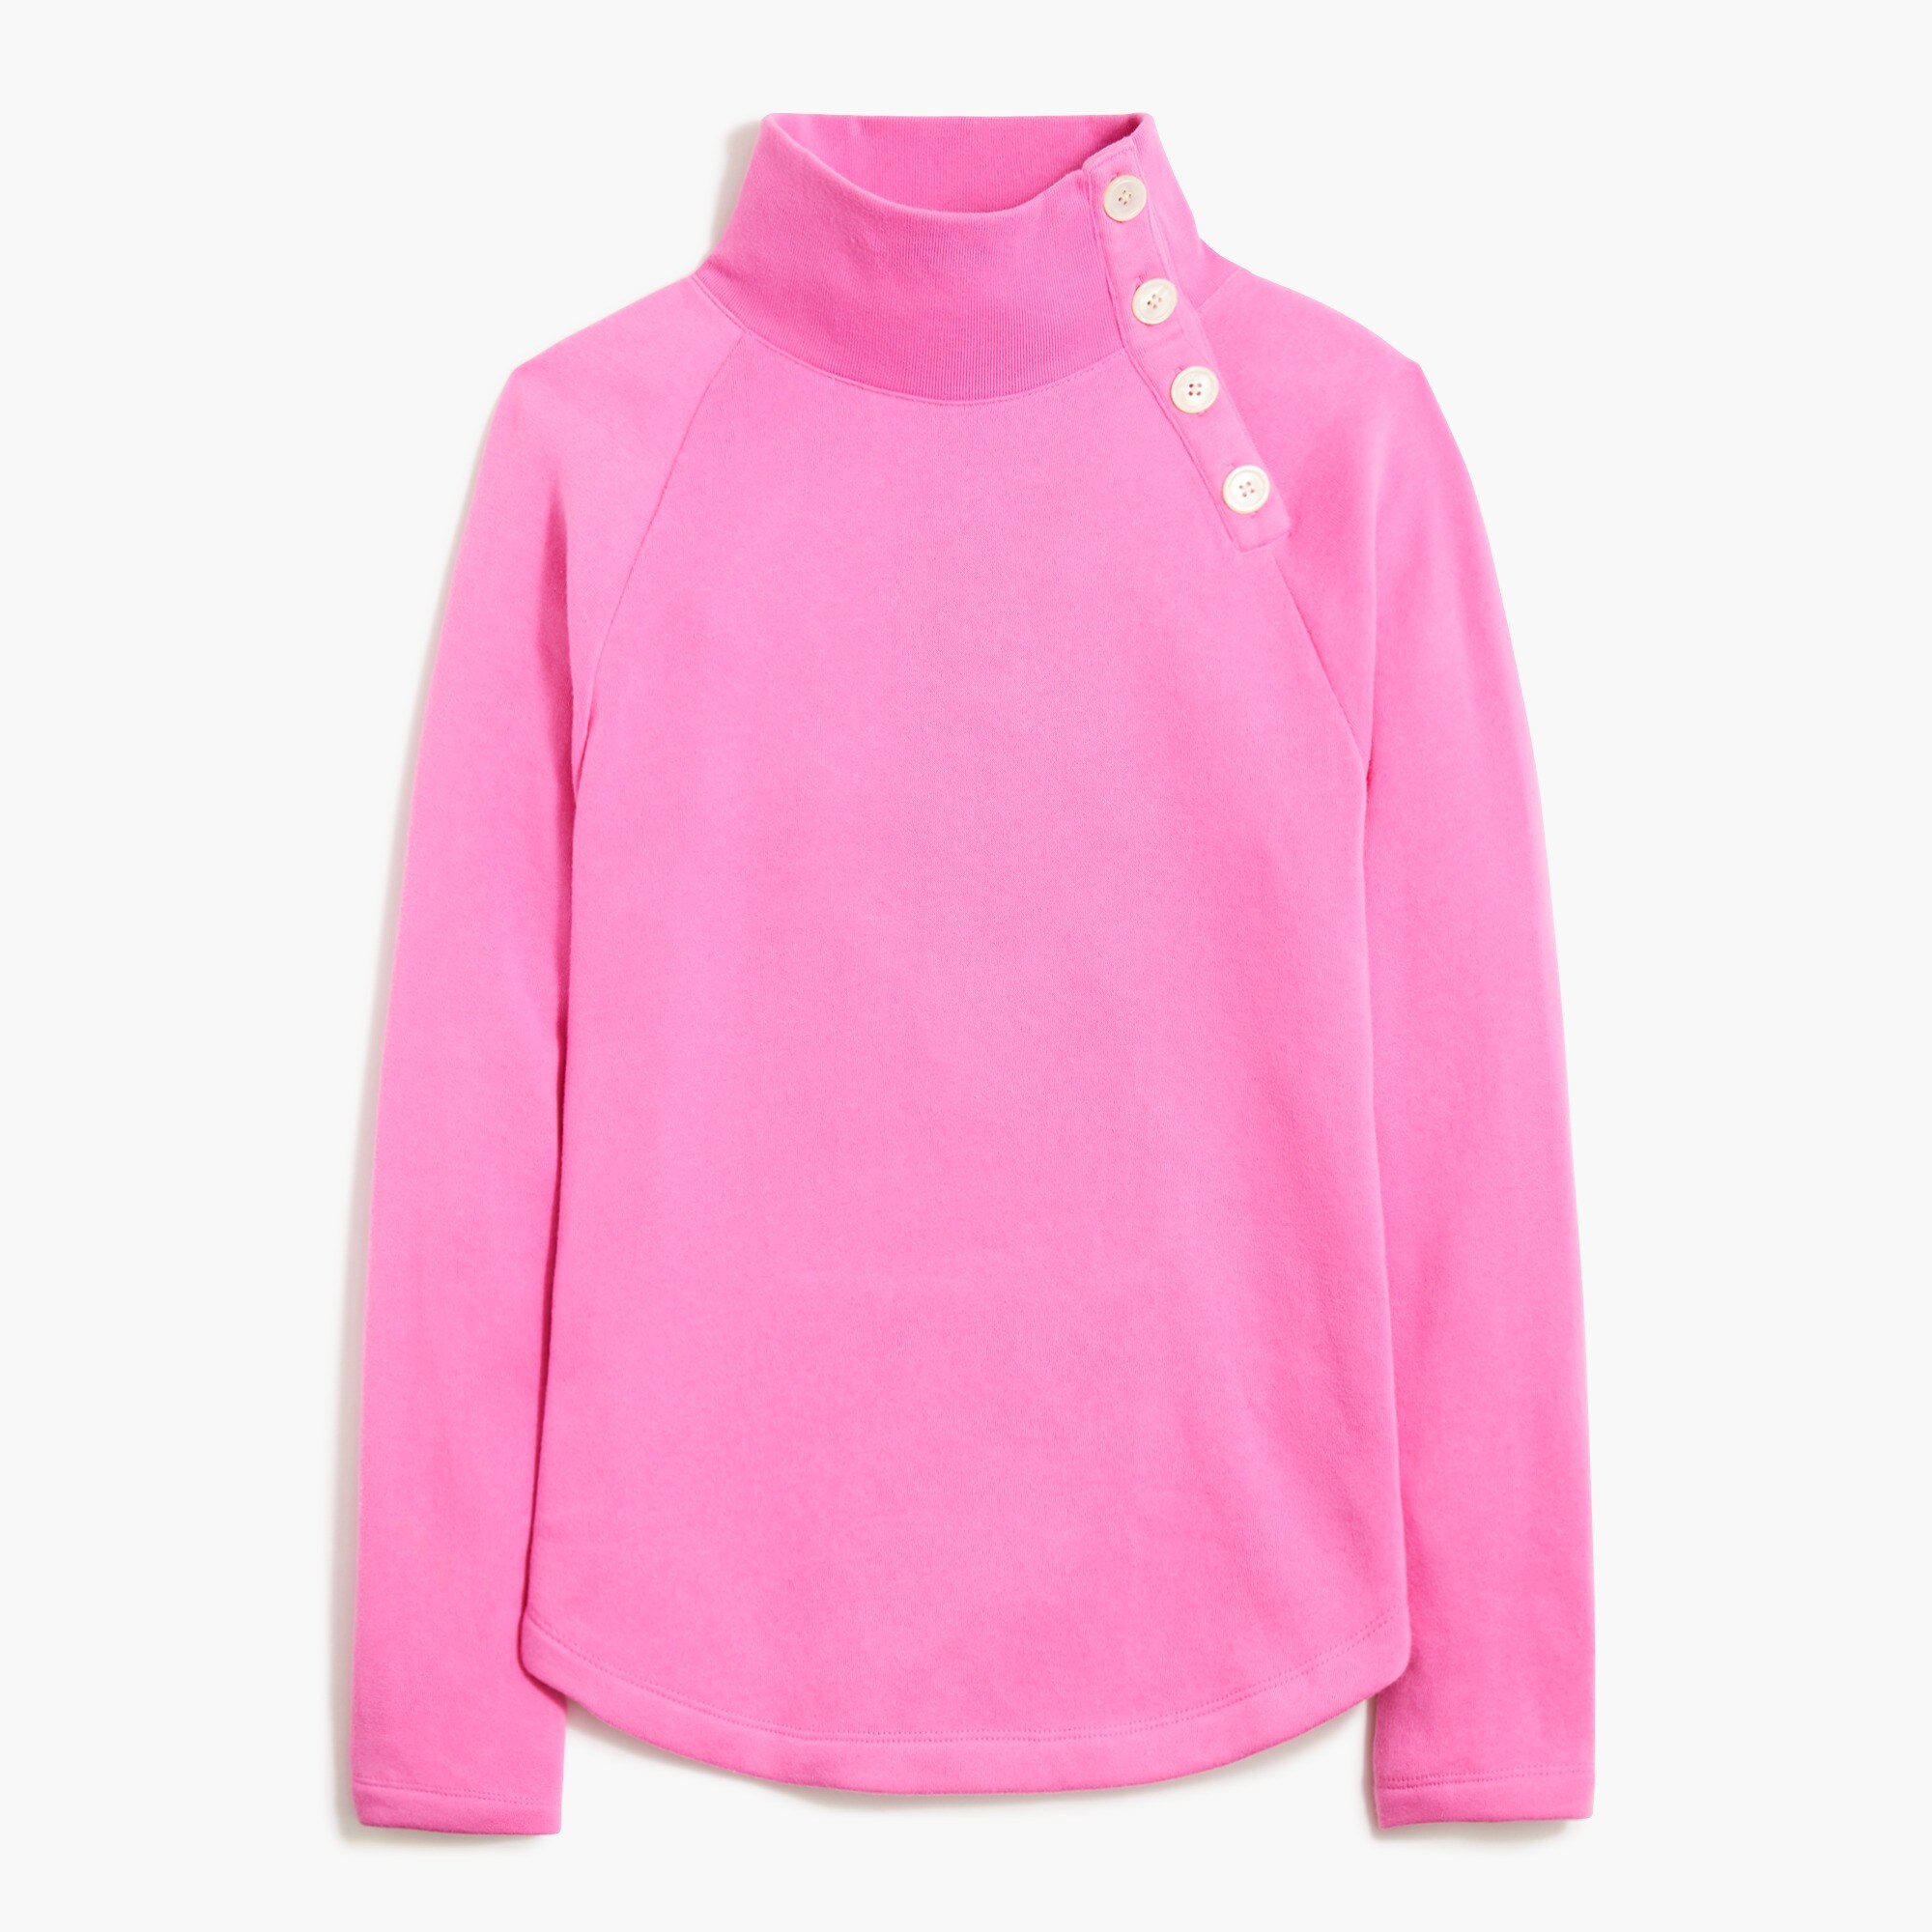  Wide button-collar pullover sweatshirt